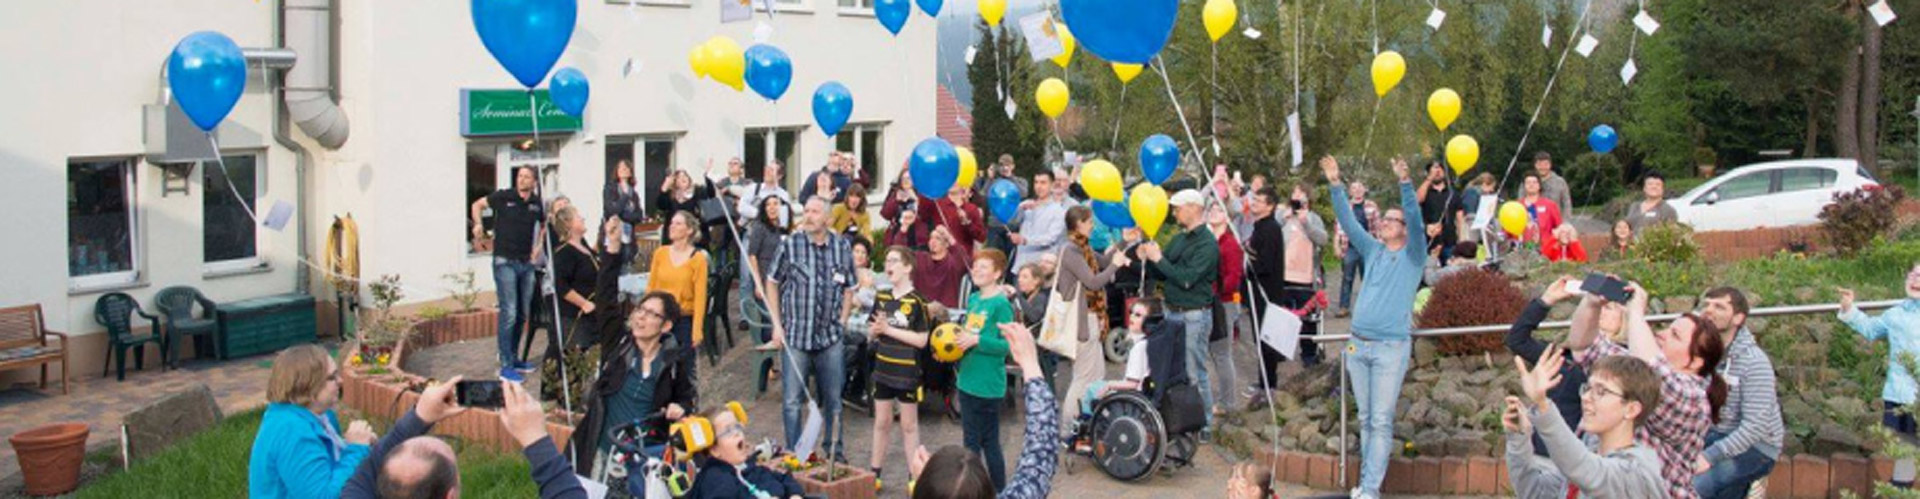 Wir lassen zur Feier des Tages auf der Familienkonferenz Luftballons in den Vereins-Farben steigen